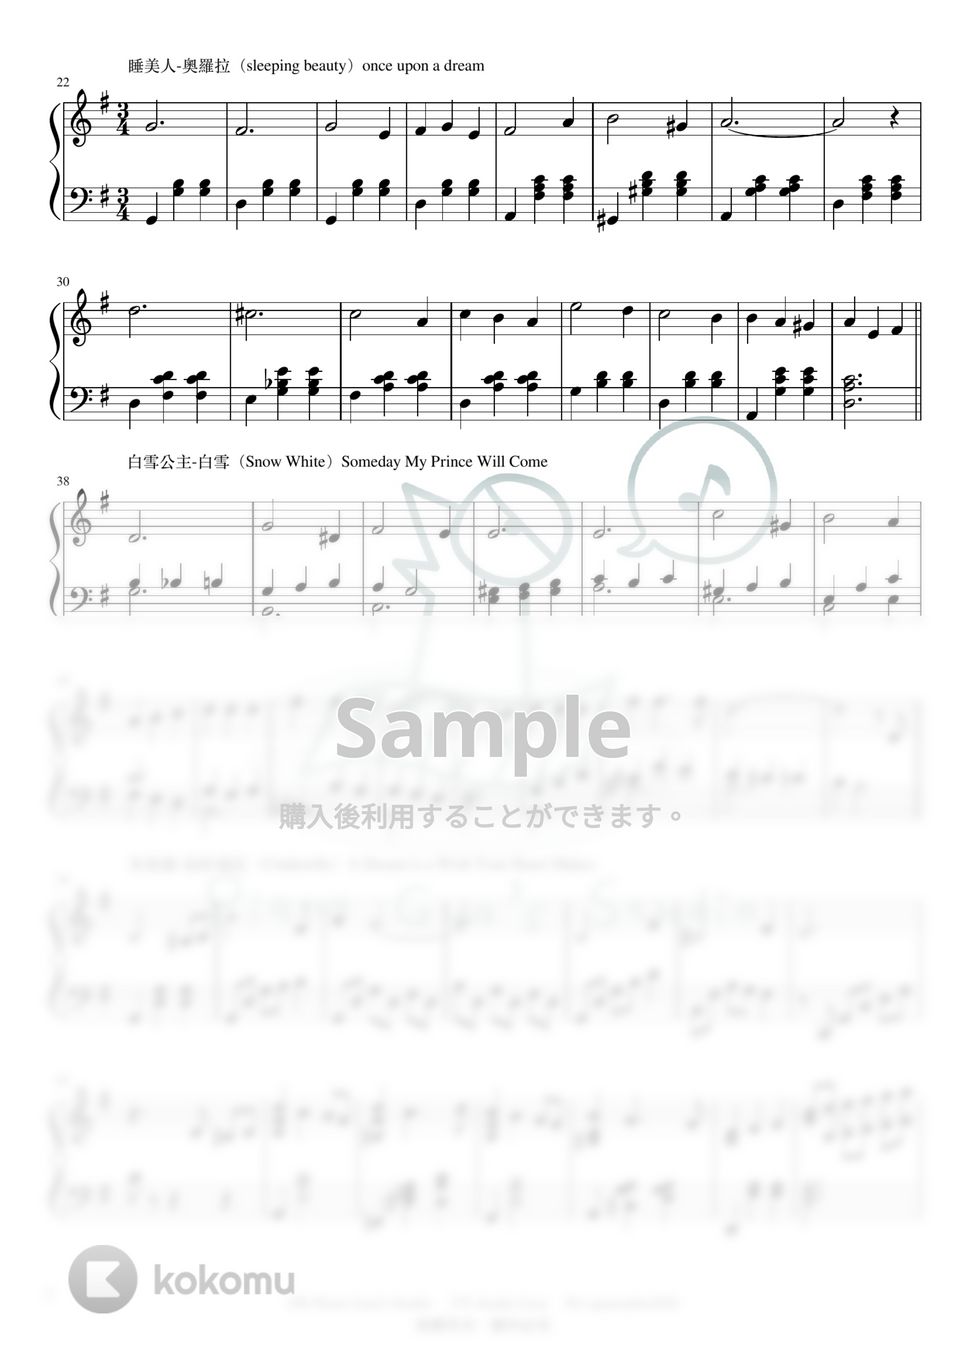 Disney - Disney x 14 Princess Piano Cover (Suite) by Piano Gua's Studio